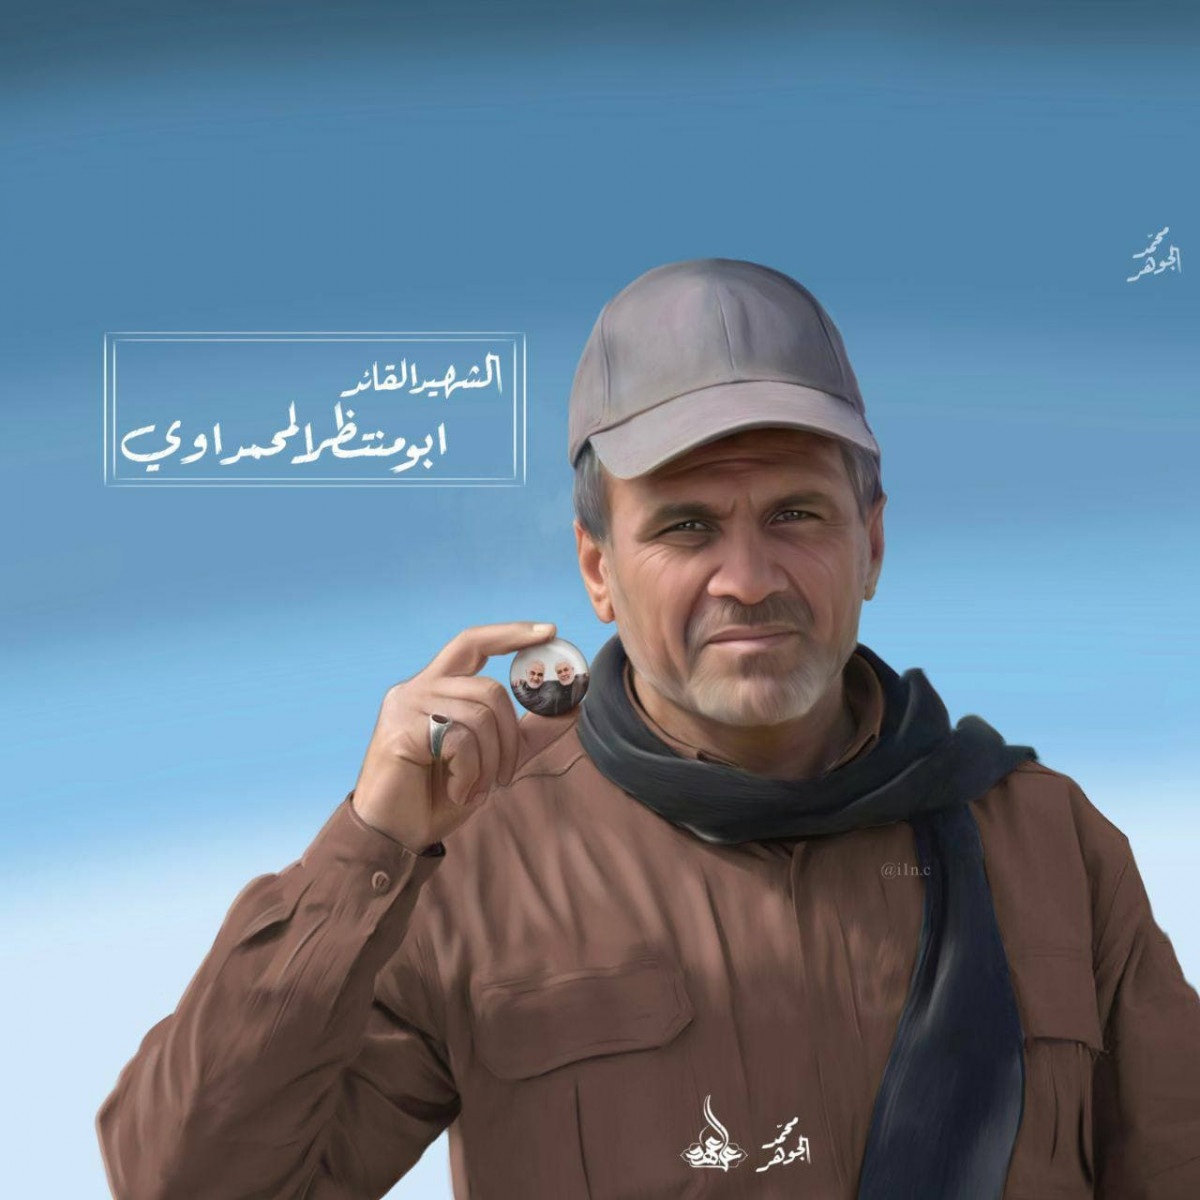 الشهيد ابو منتظر المحمداوي قائد العمليات في بدر الجناح العسكري